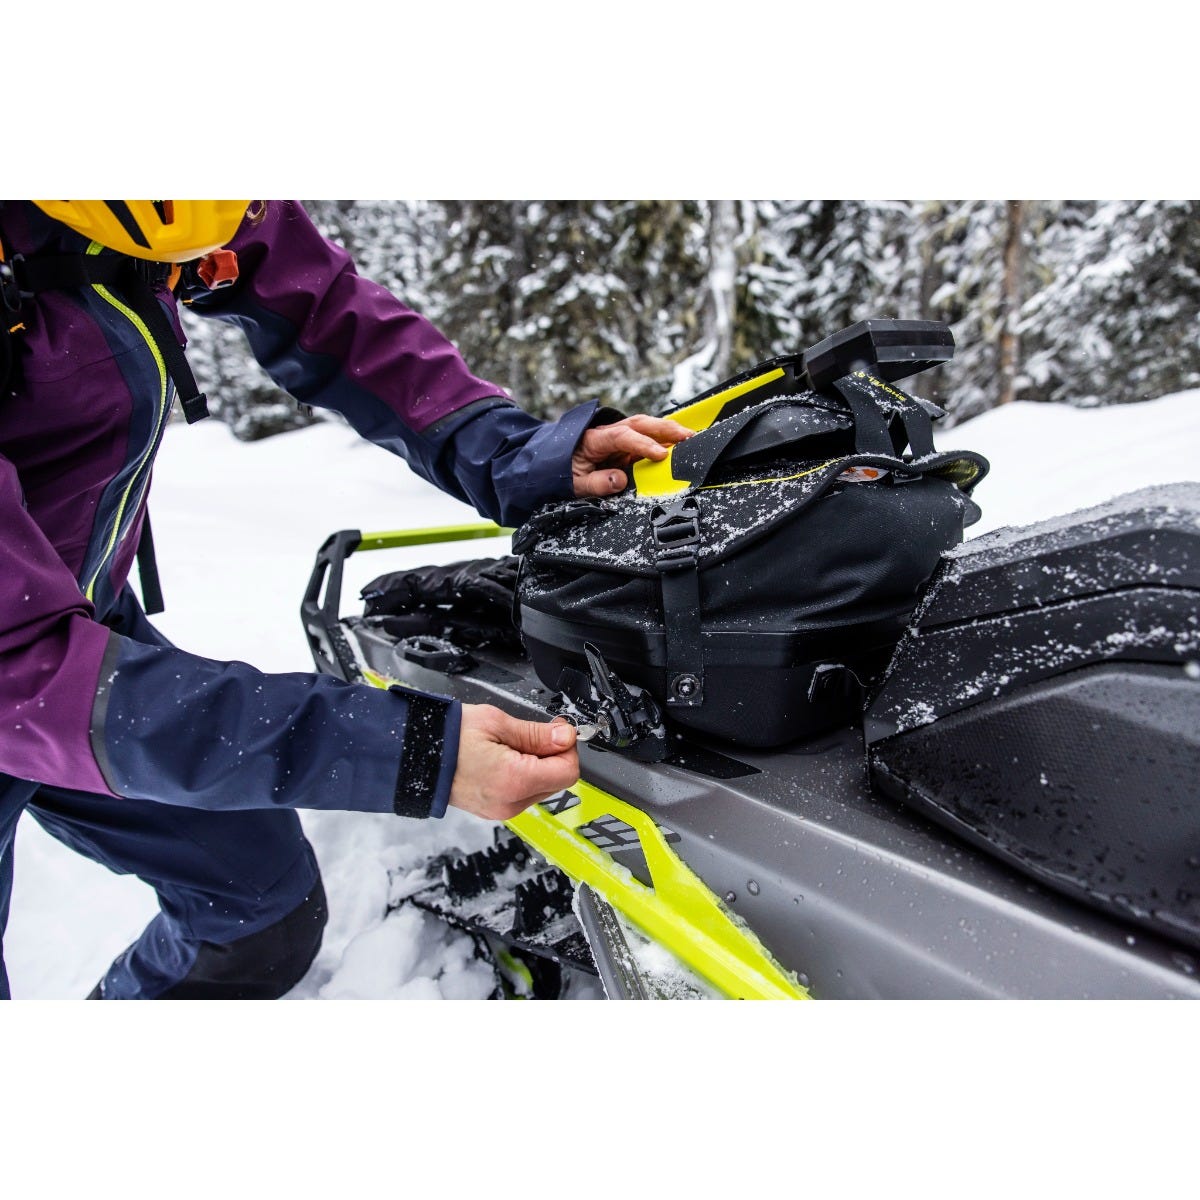 Ski-Doo LinQ Trail Pro バッグ - 30 L 日本向け正規品 - technicomm.qc.ca